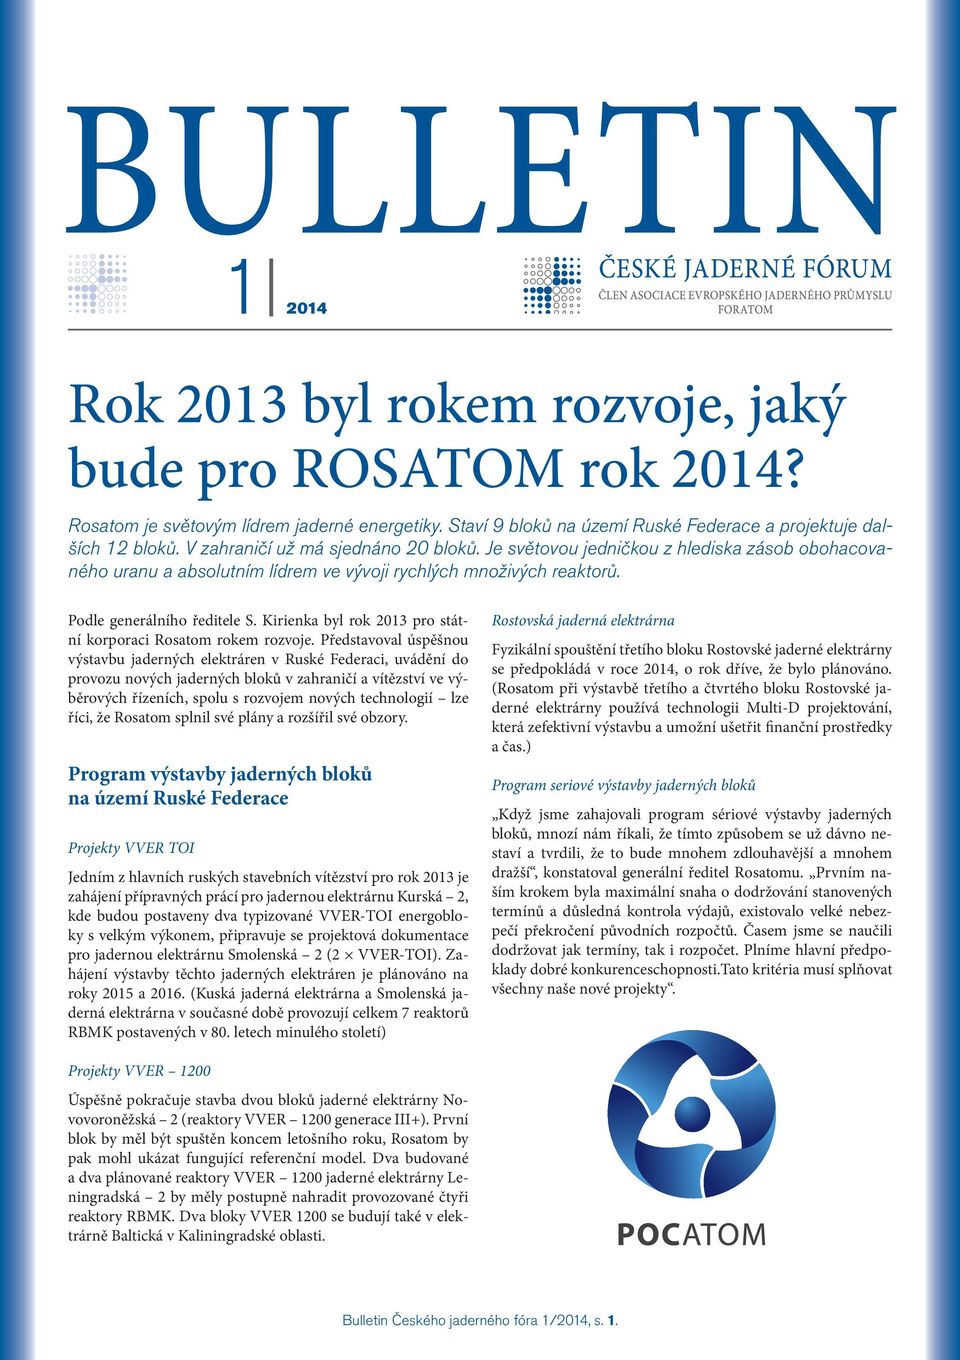 Kirienka byl rok 2013 pro státní korporaci Rosatom rokem rozvoje.